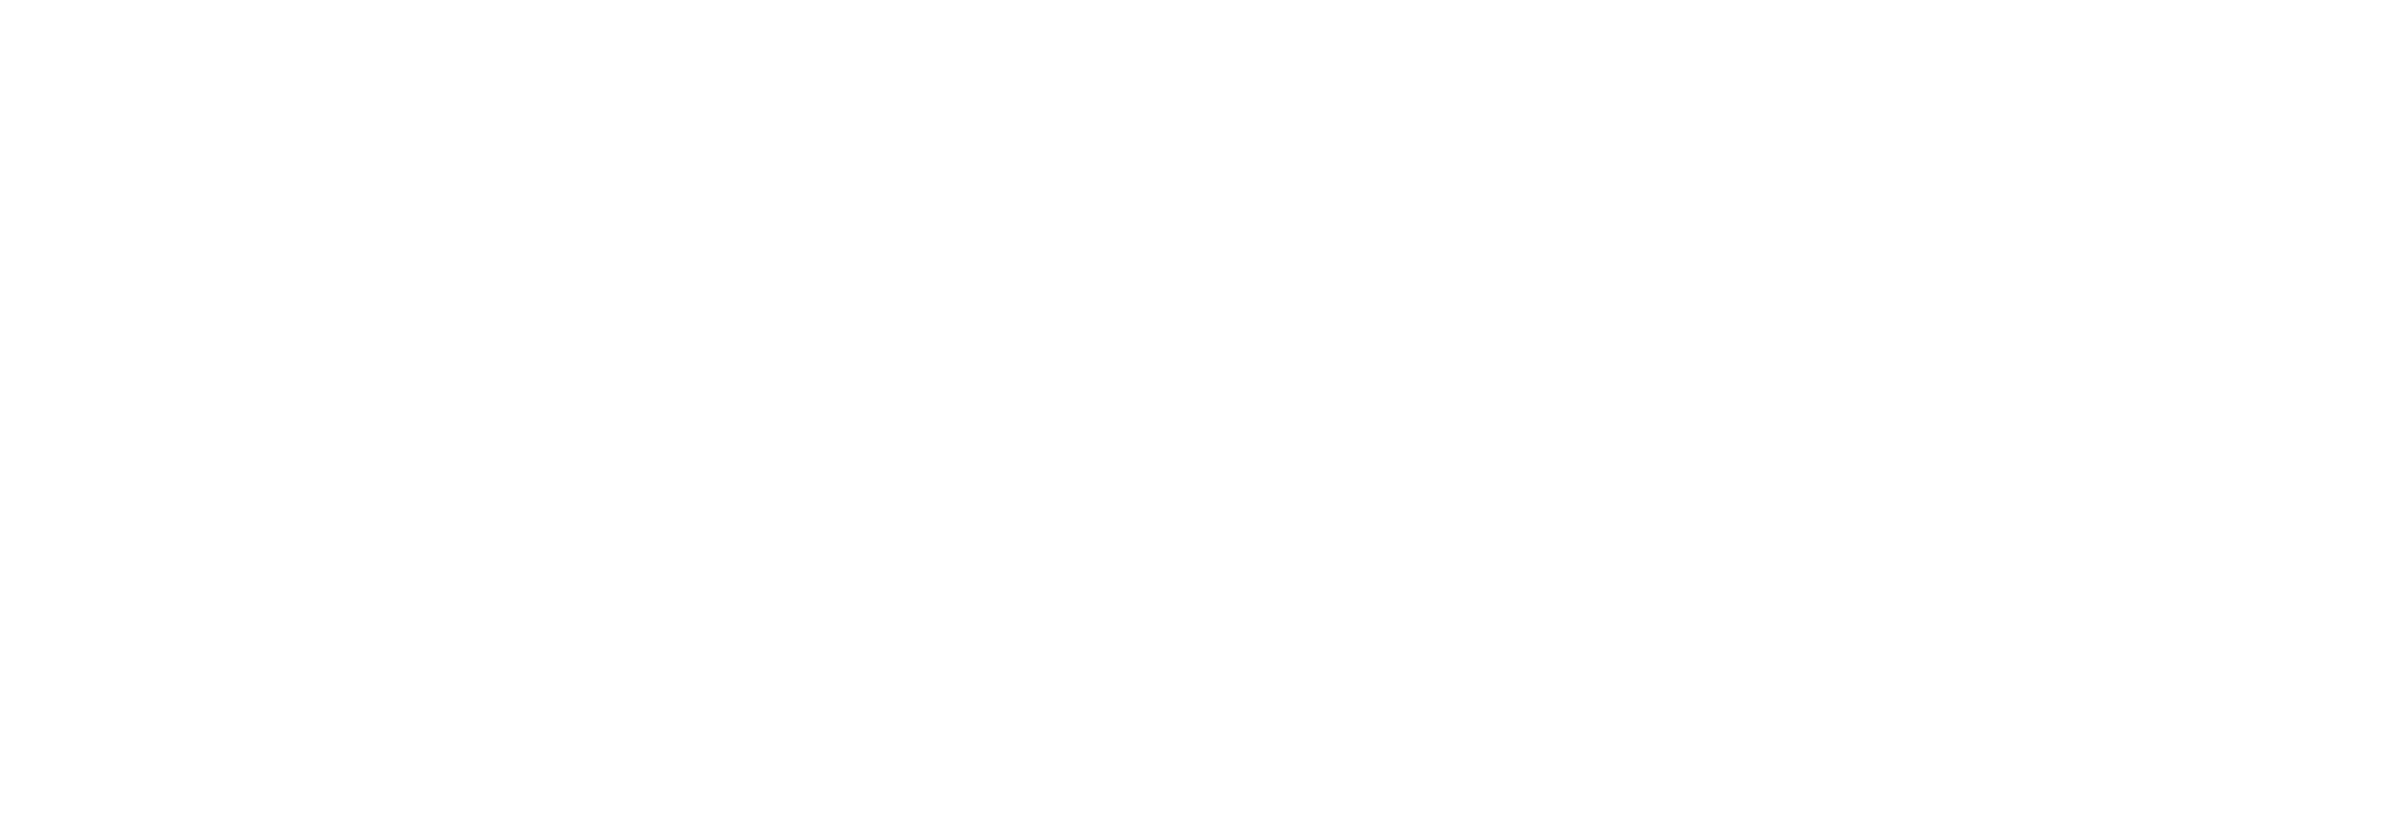 clarks-1-logo-black-and-white